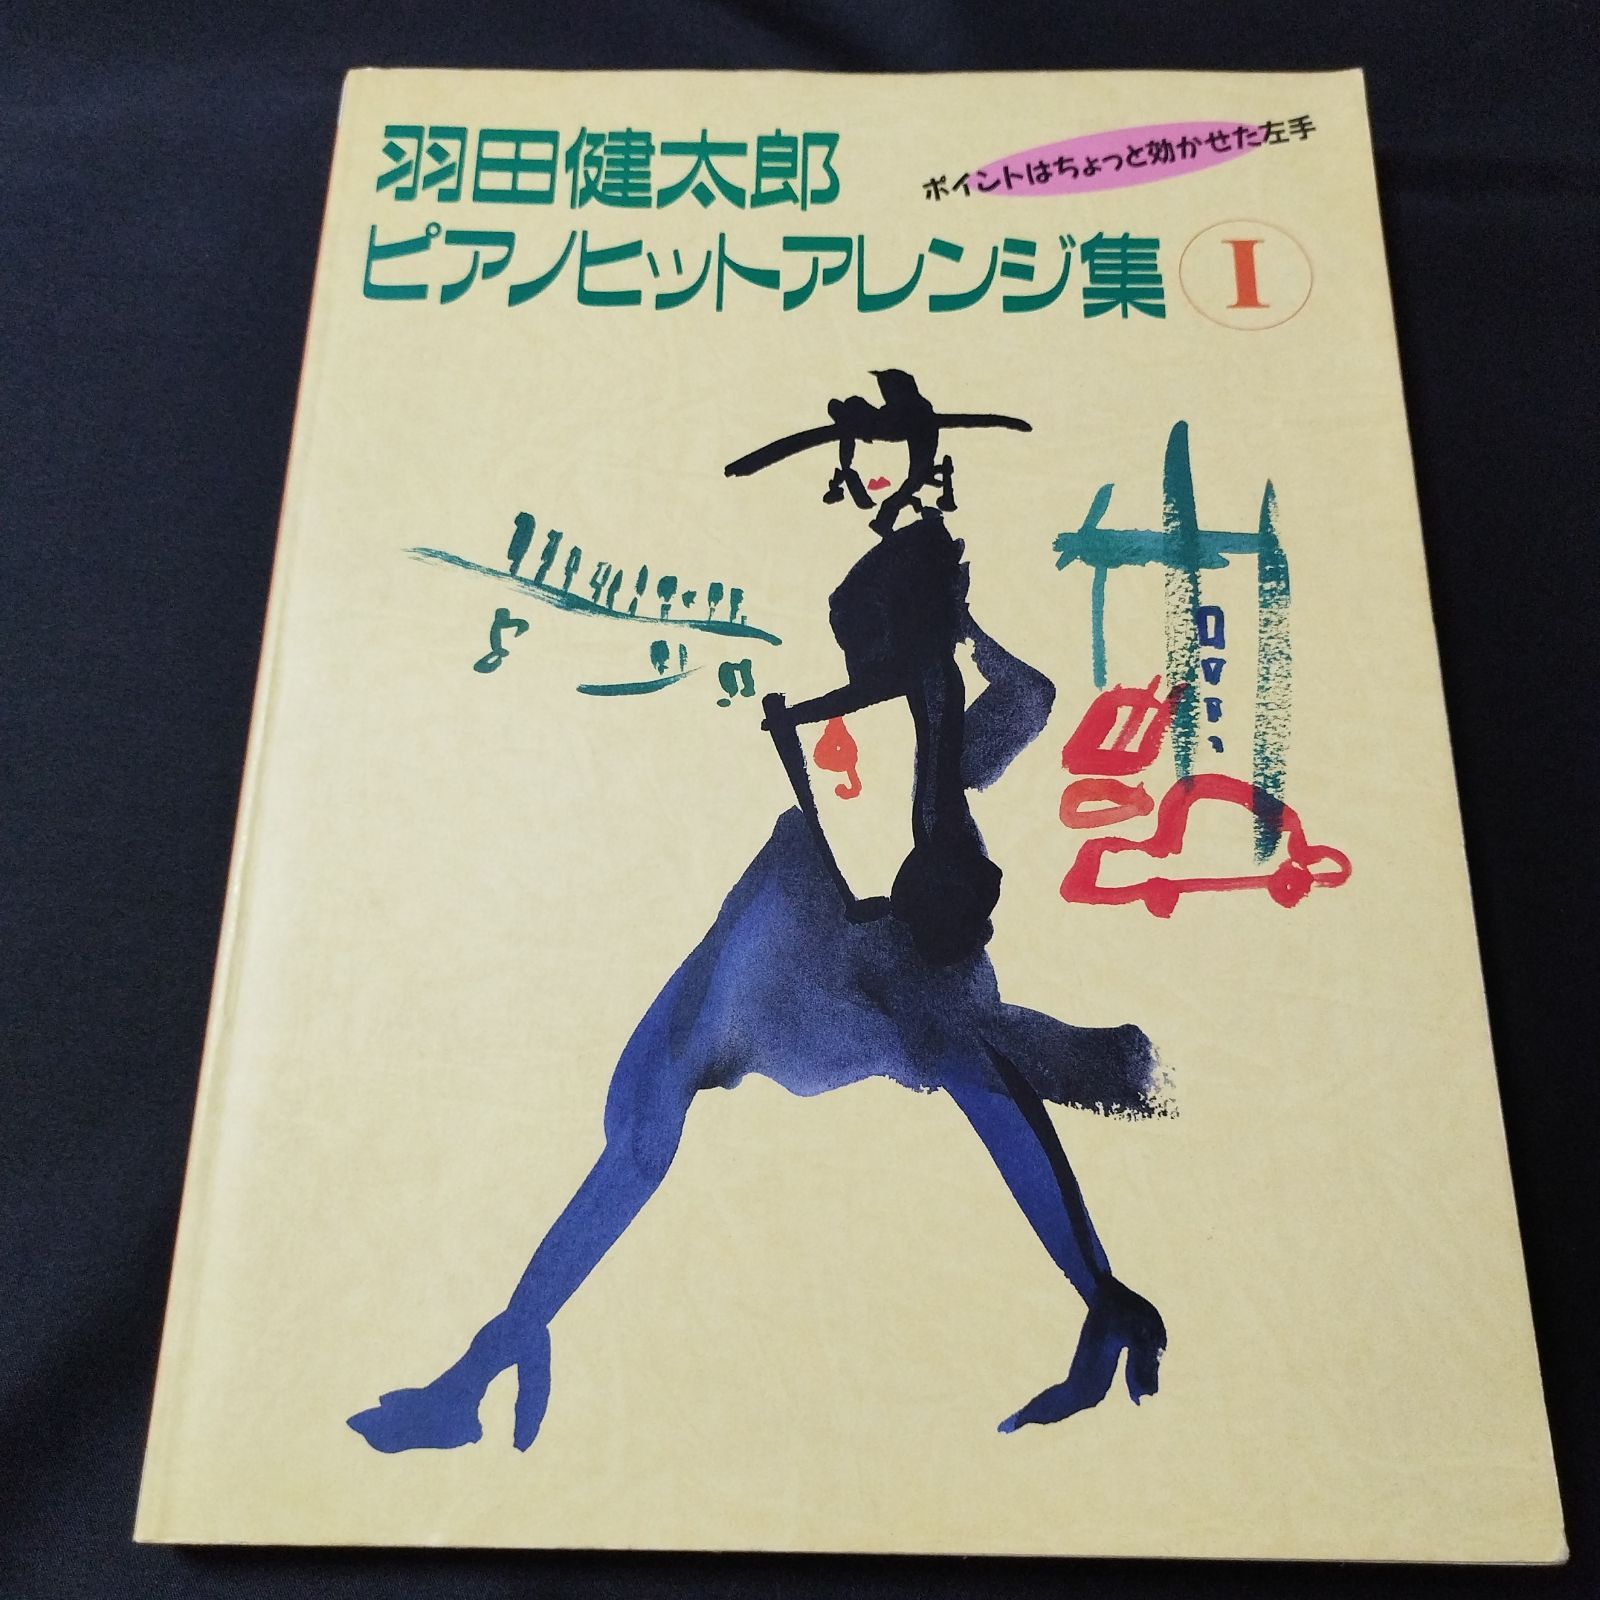 羽田健太郎ピアノヒットアレンジ集 2 - 楽譜、音楽書